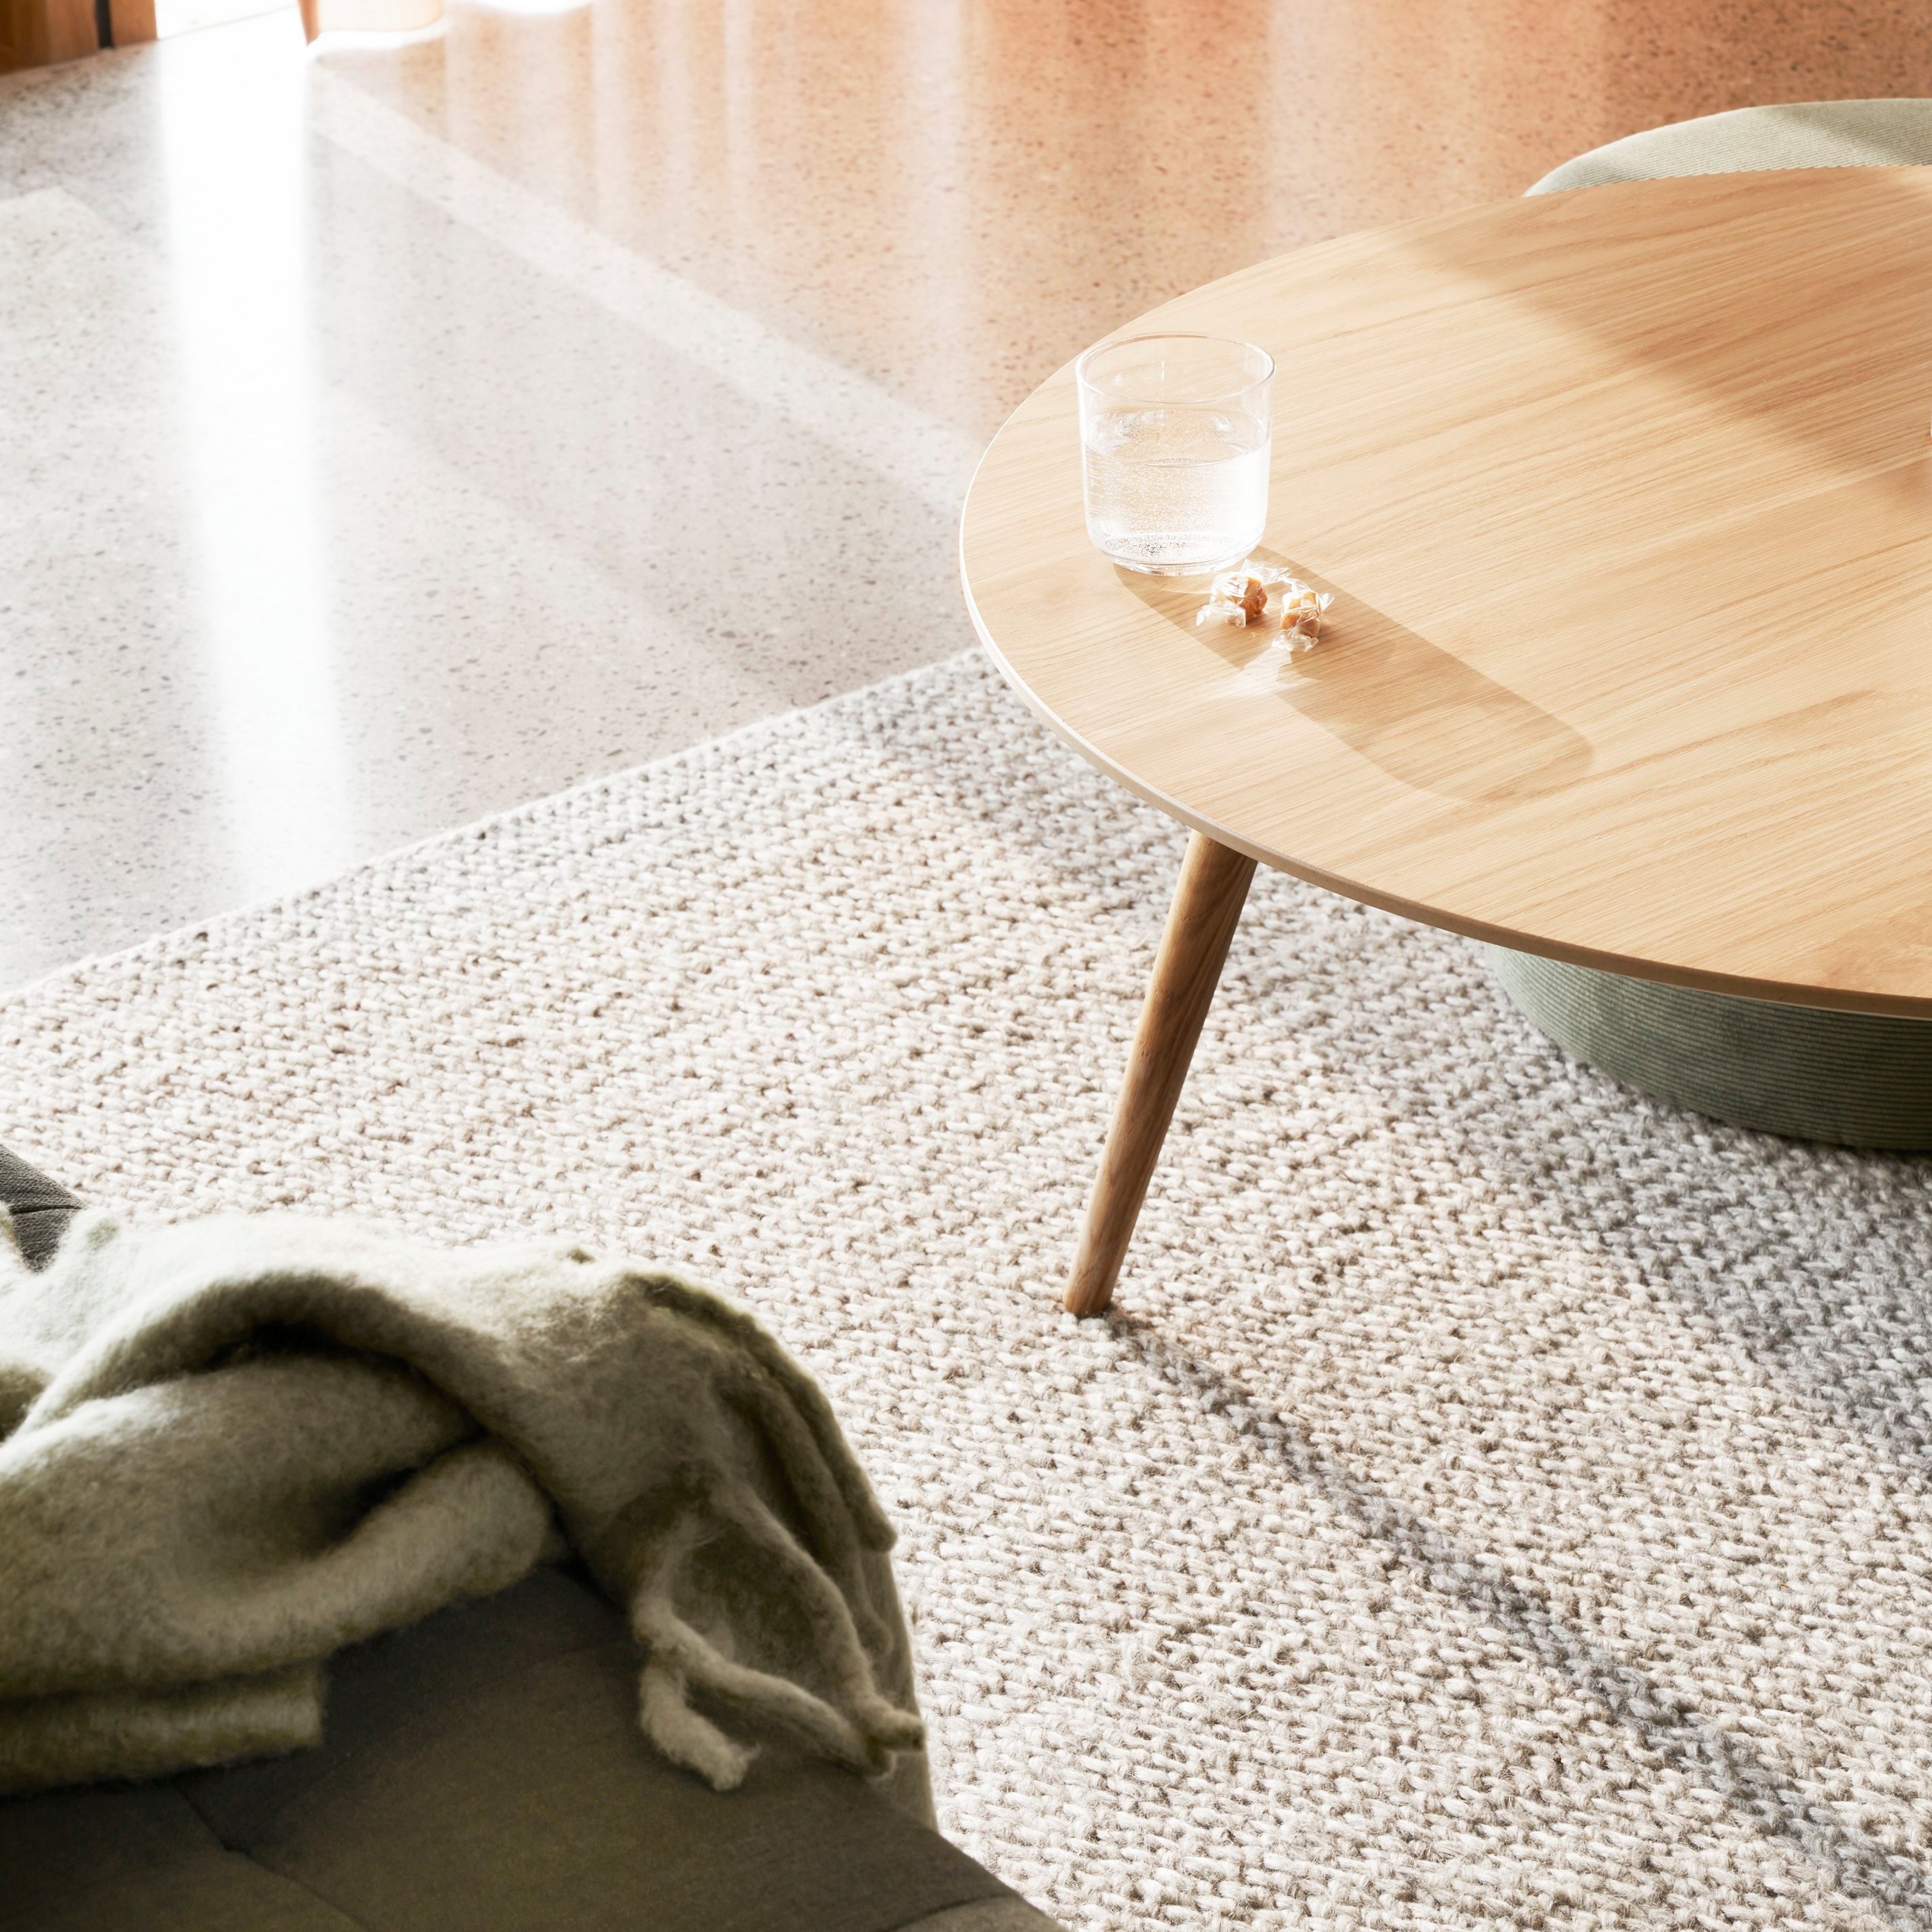 Texturerad matta med ett runt träbord, ett glas vatten och en mjuk filt i solljus.